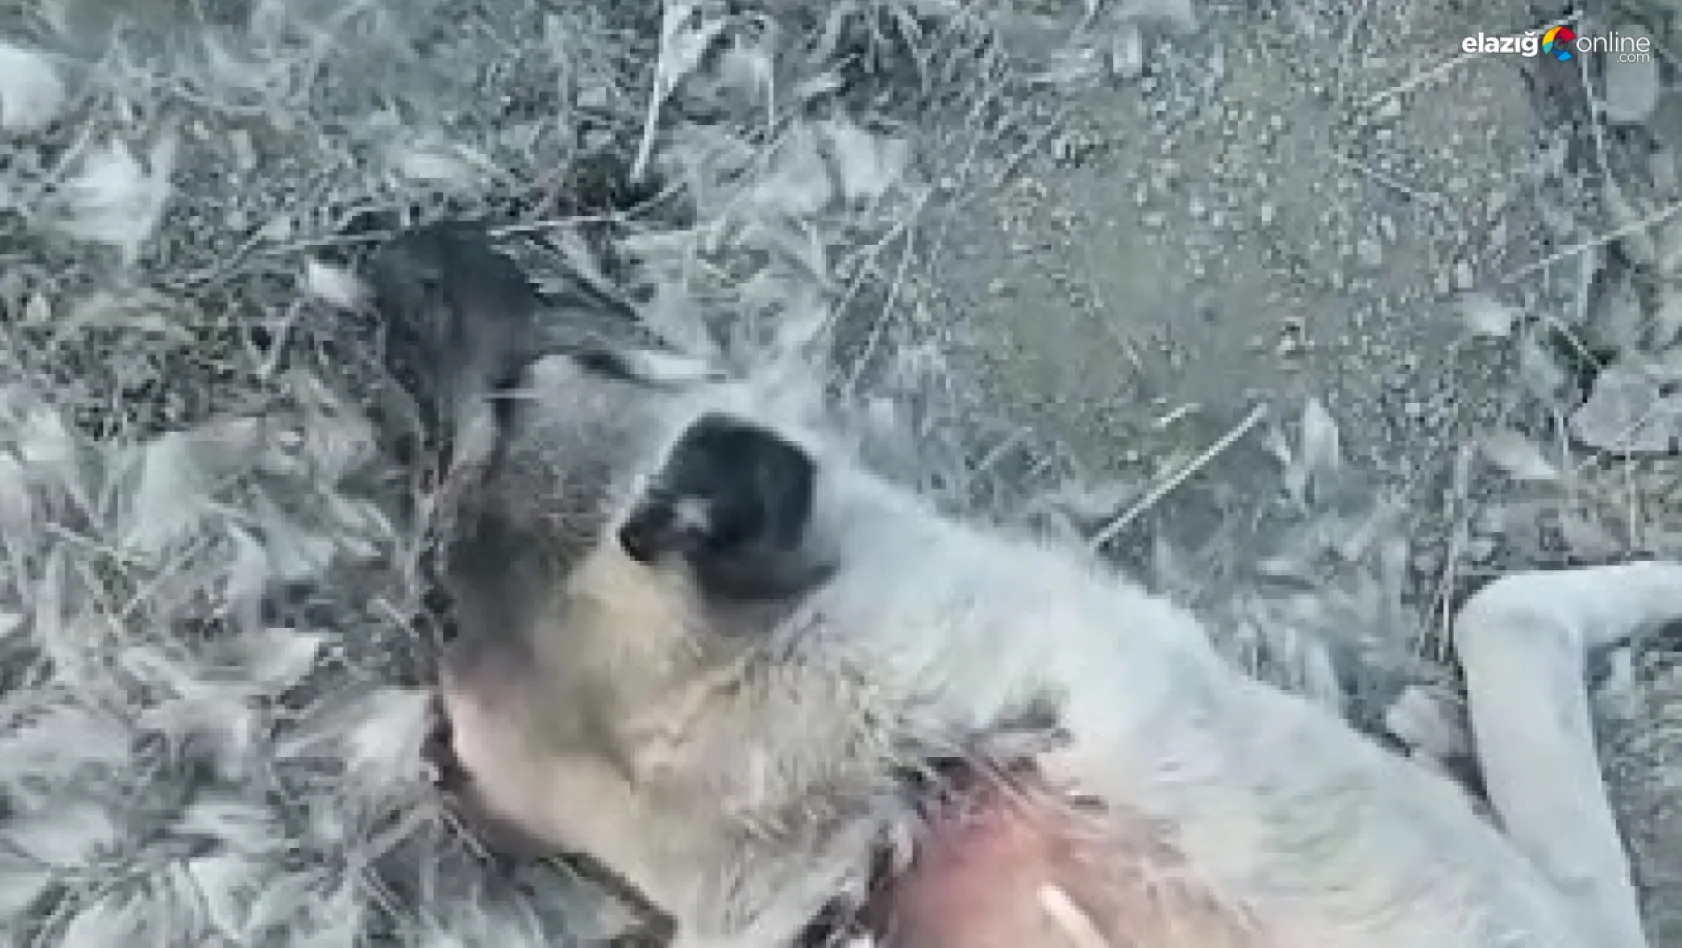 Elazığ'da zehirlenerek öldürülen köpekler için soruşturma başlatıldı